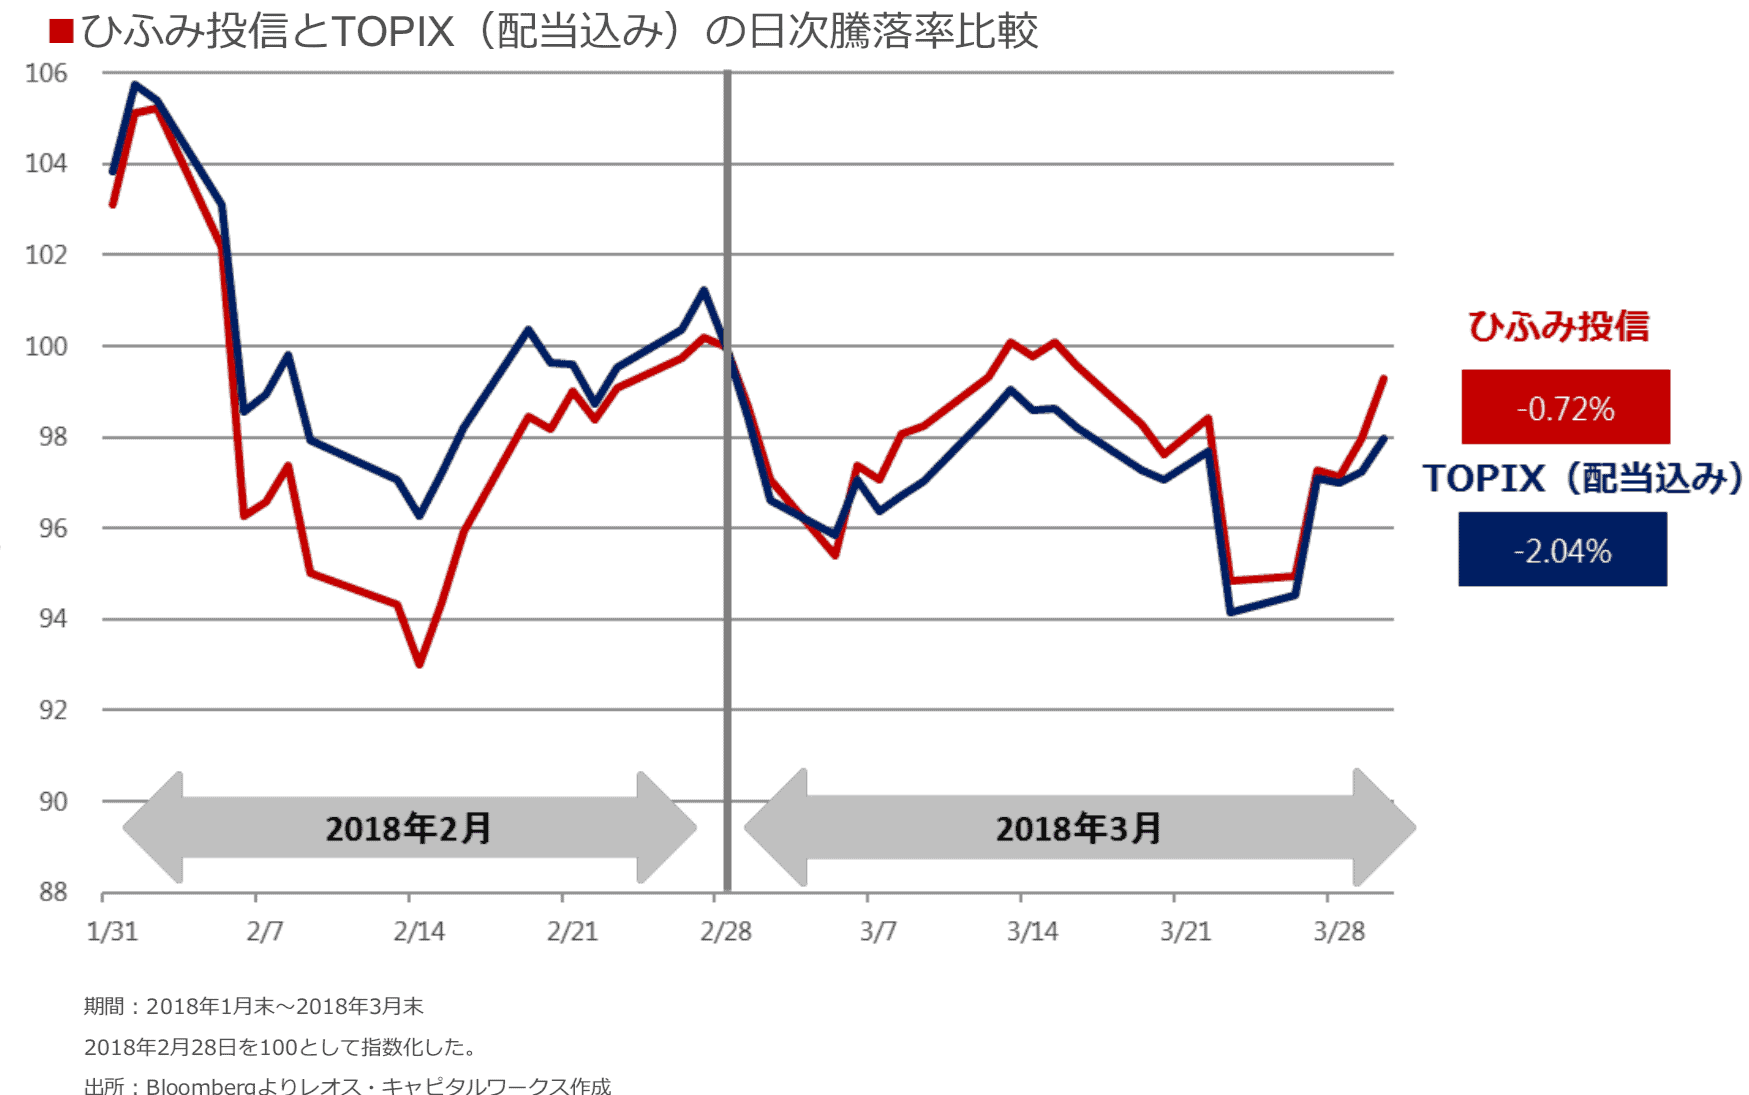 ひふみとTOPIXのパフォーマンス比較(2018年3月)